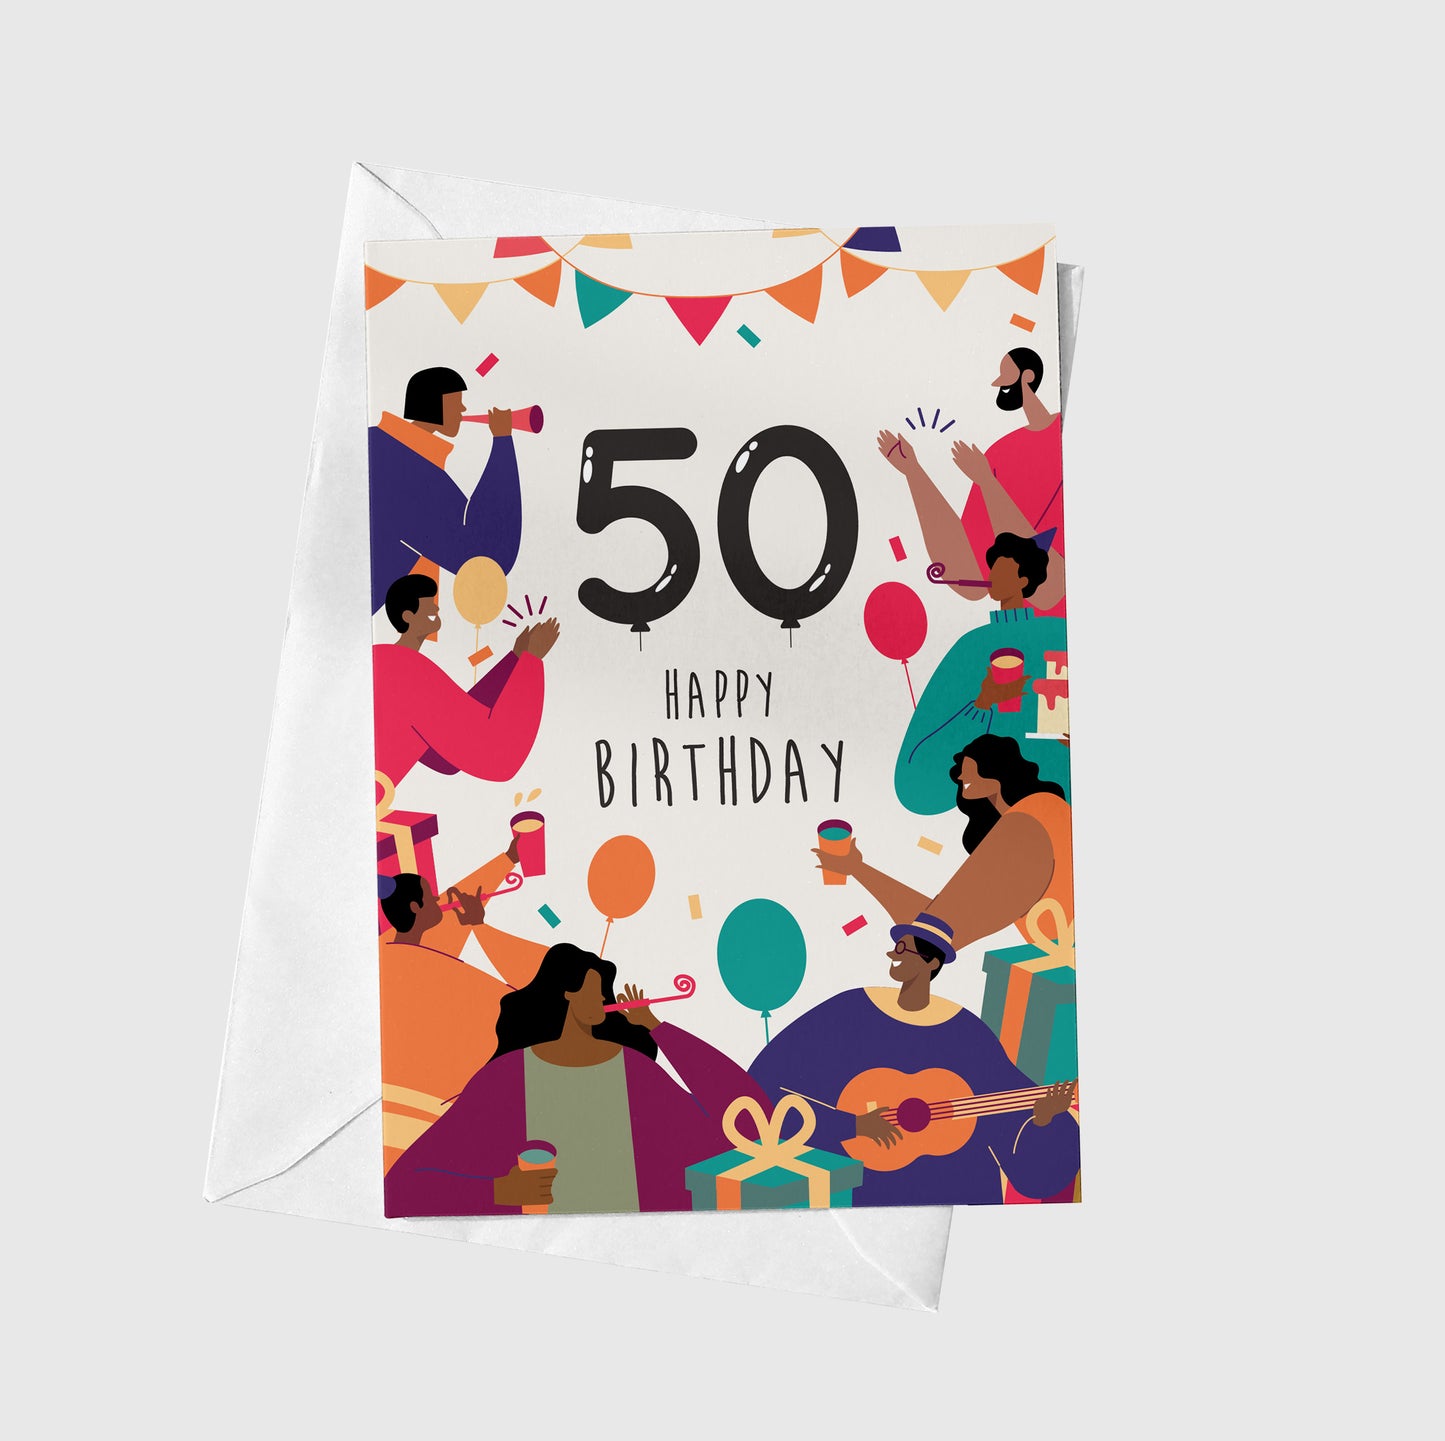 Celebrating 50 Years